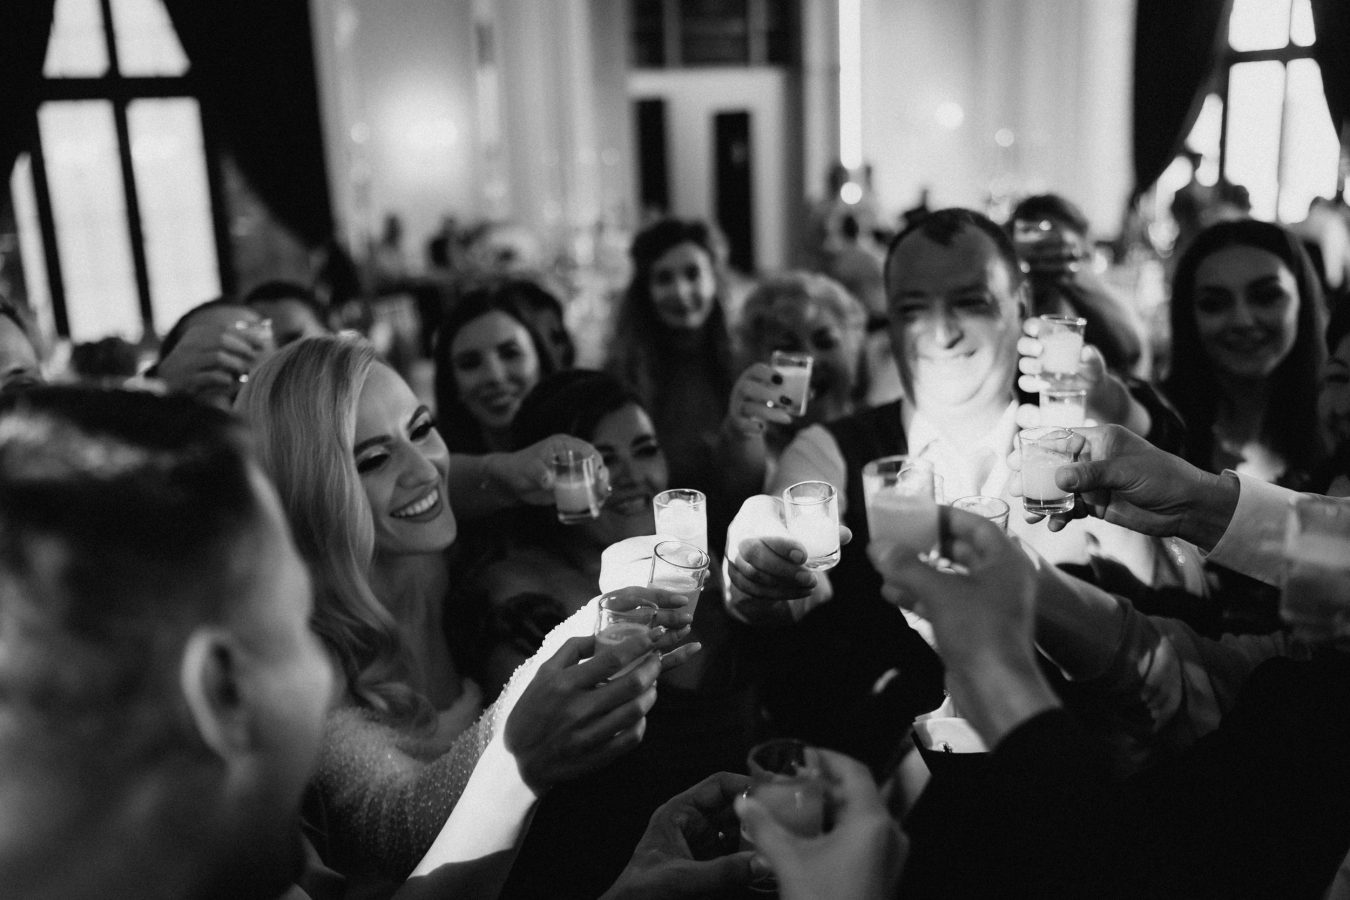 Fotograf cununie nunta botez petrecere corporate conferinte sibiu bucuresti cluj